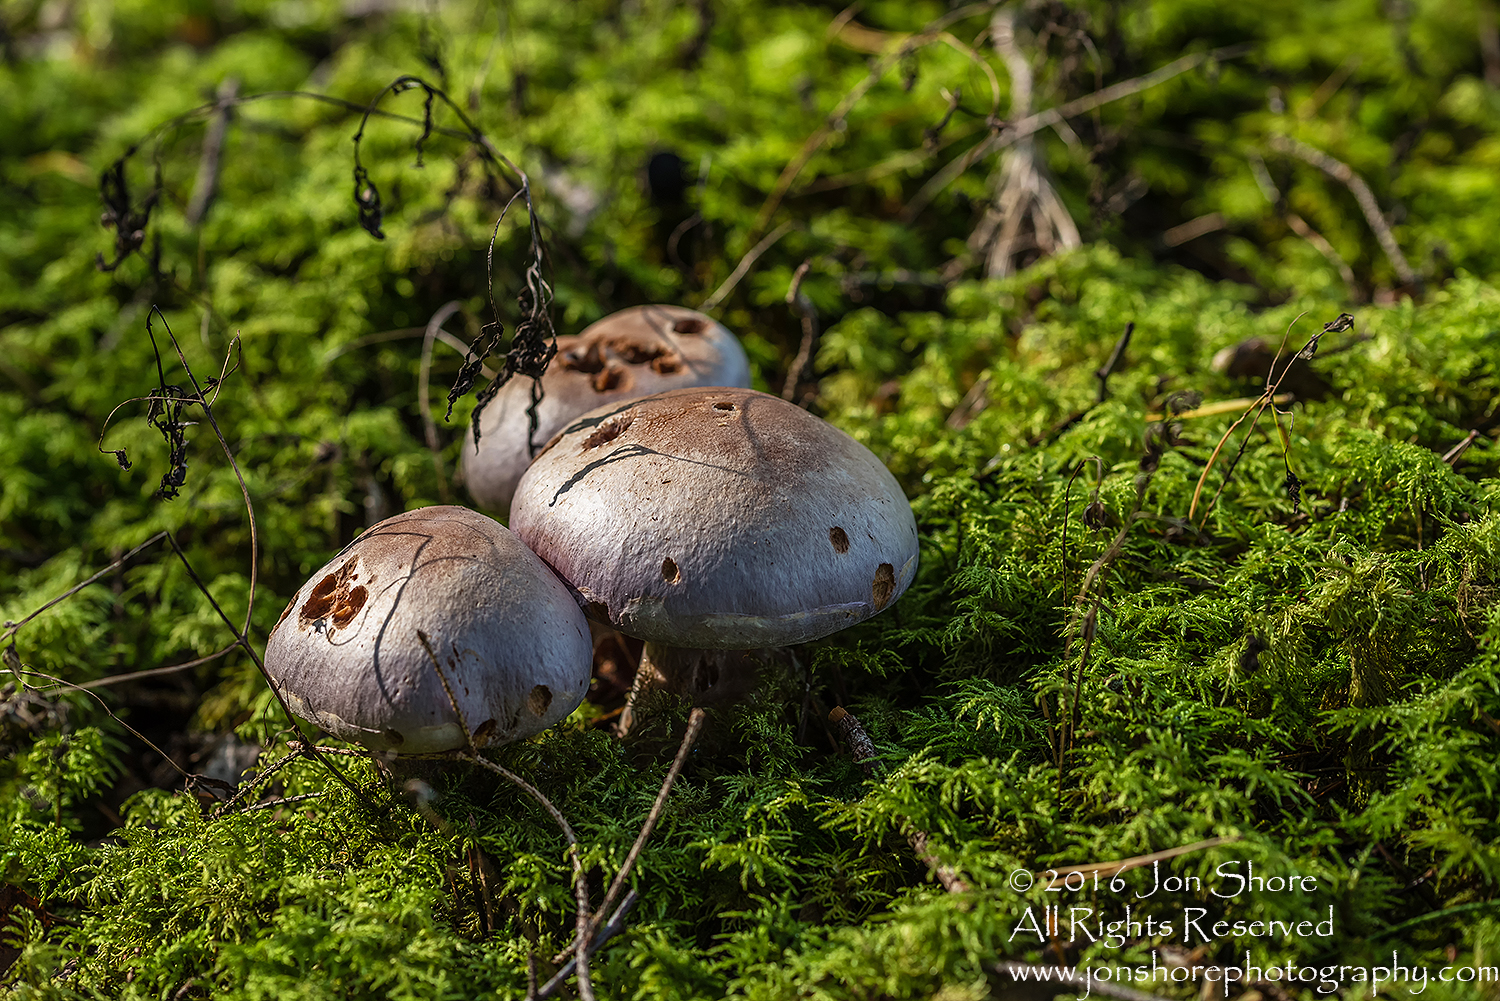 Wild Mushroom - Latgale, Latvia. Tamron 90mm Macro lens